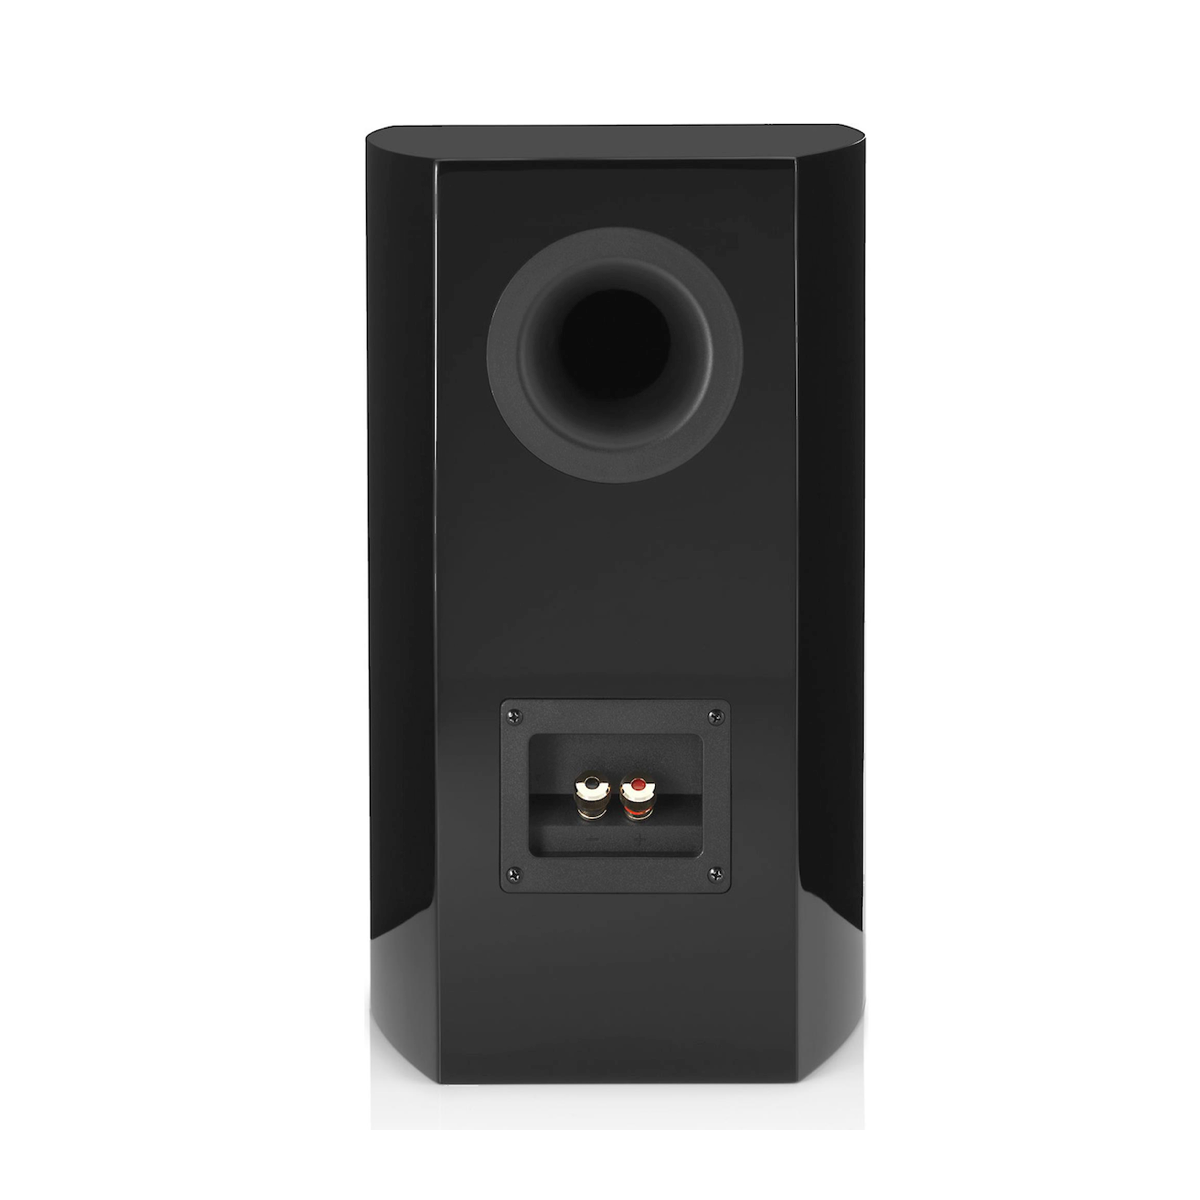 Revel Concerta2 M16 - Bookshelf Speaker (Pair) - AVStore